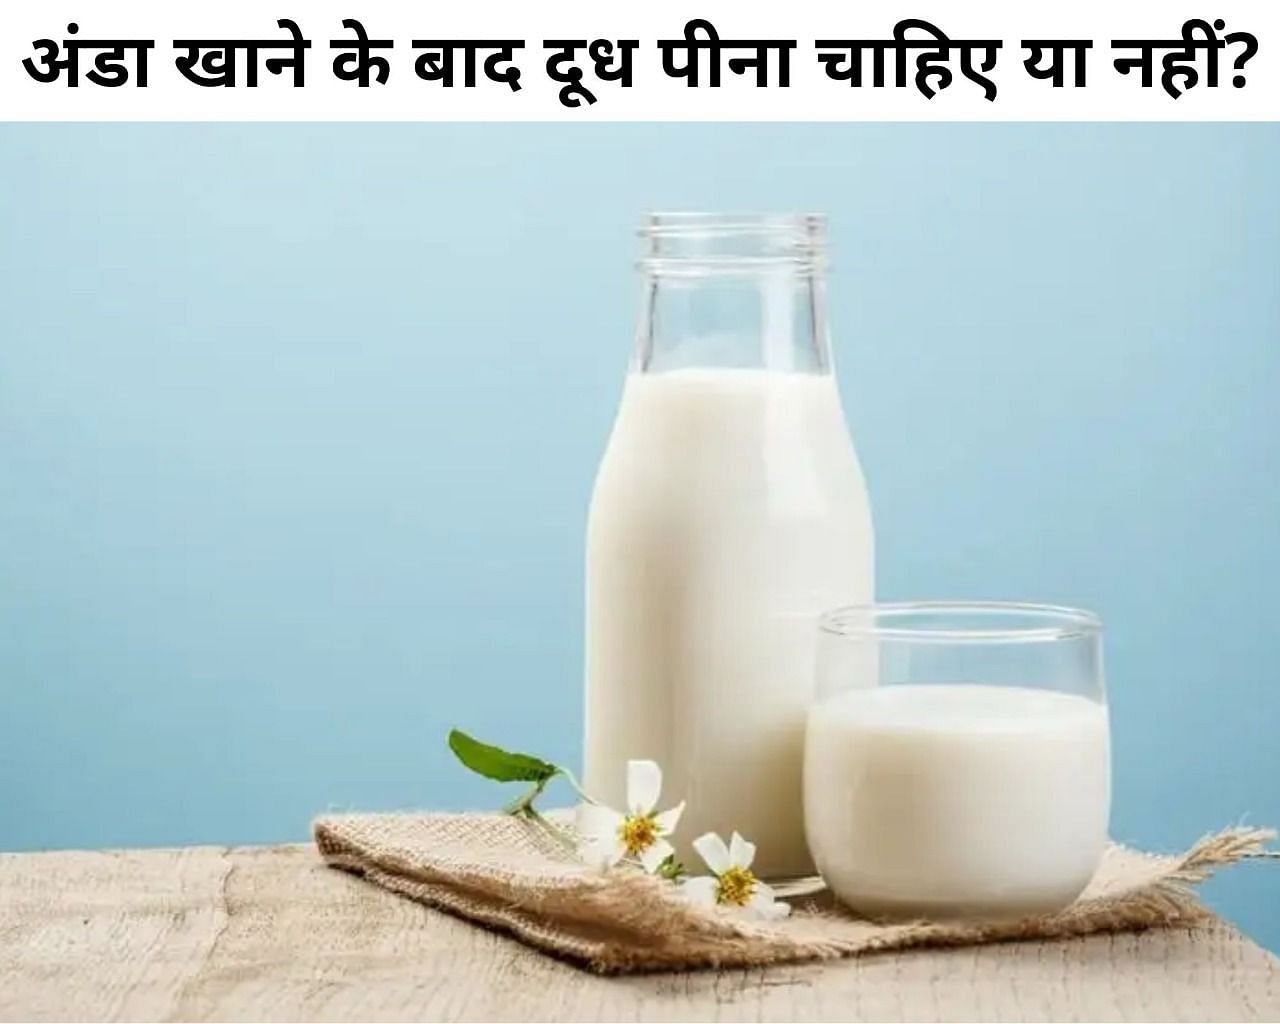 अंडा खाने के बाद दूध पीना चाहिए या नहीं? (फोटो - sportskeeda hindi)